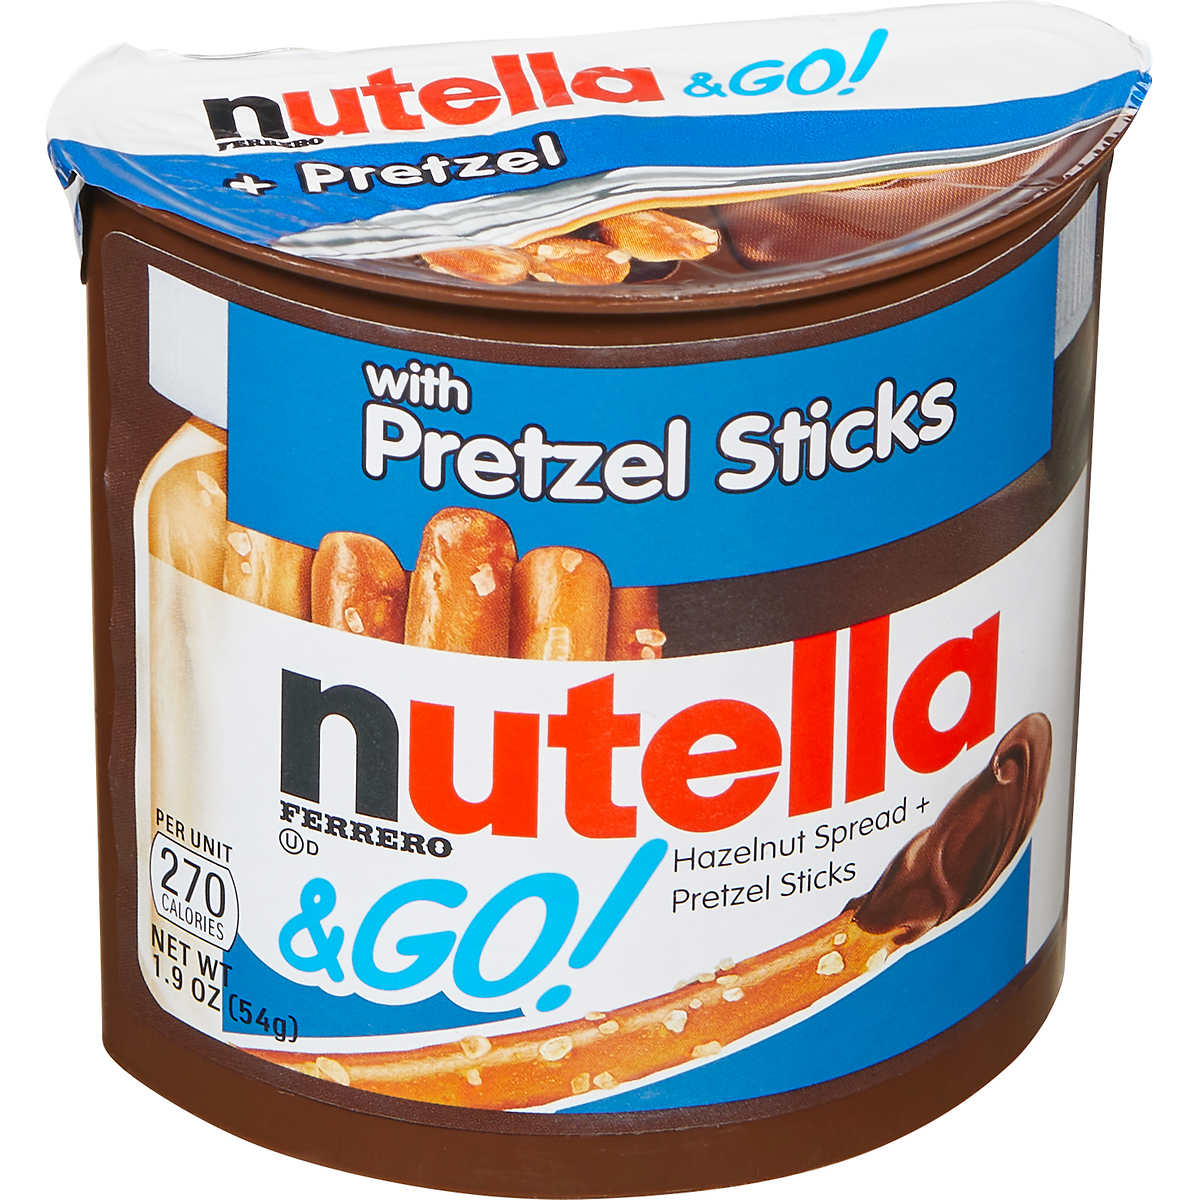 Nutella and Go Hazelnut Spread with Pretzel Sticks, 1.9 oz, 16 ct ...